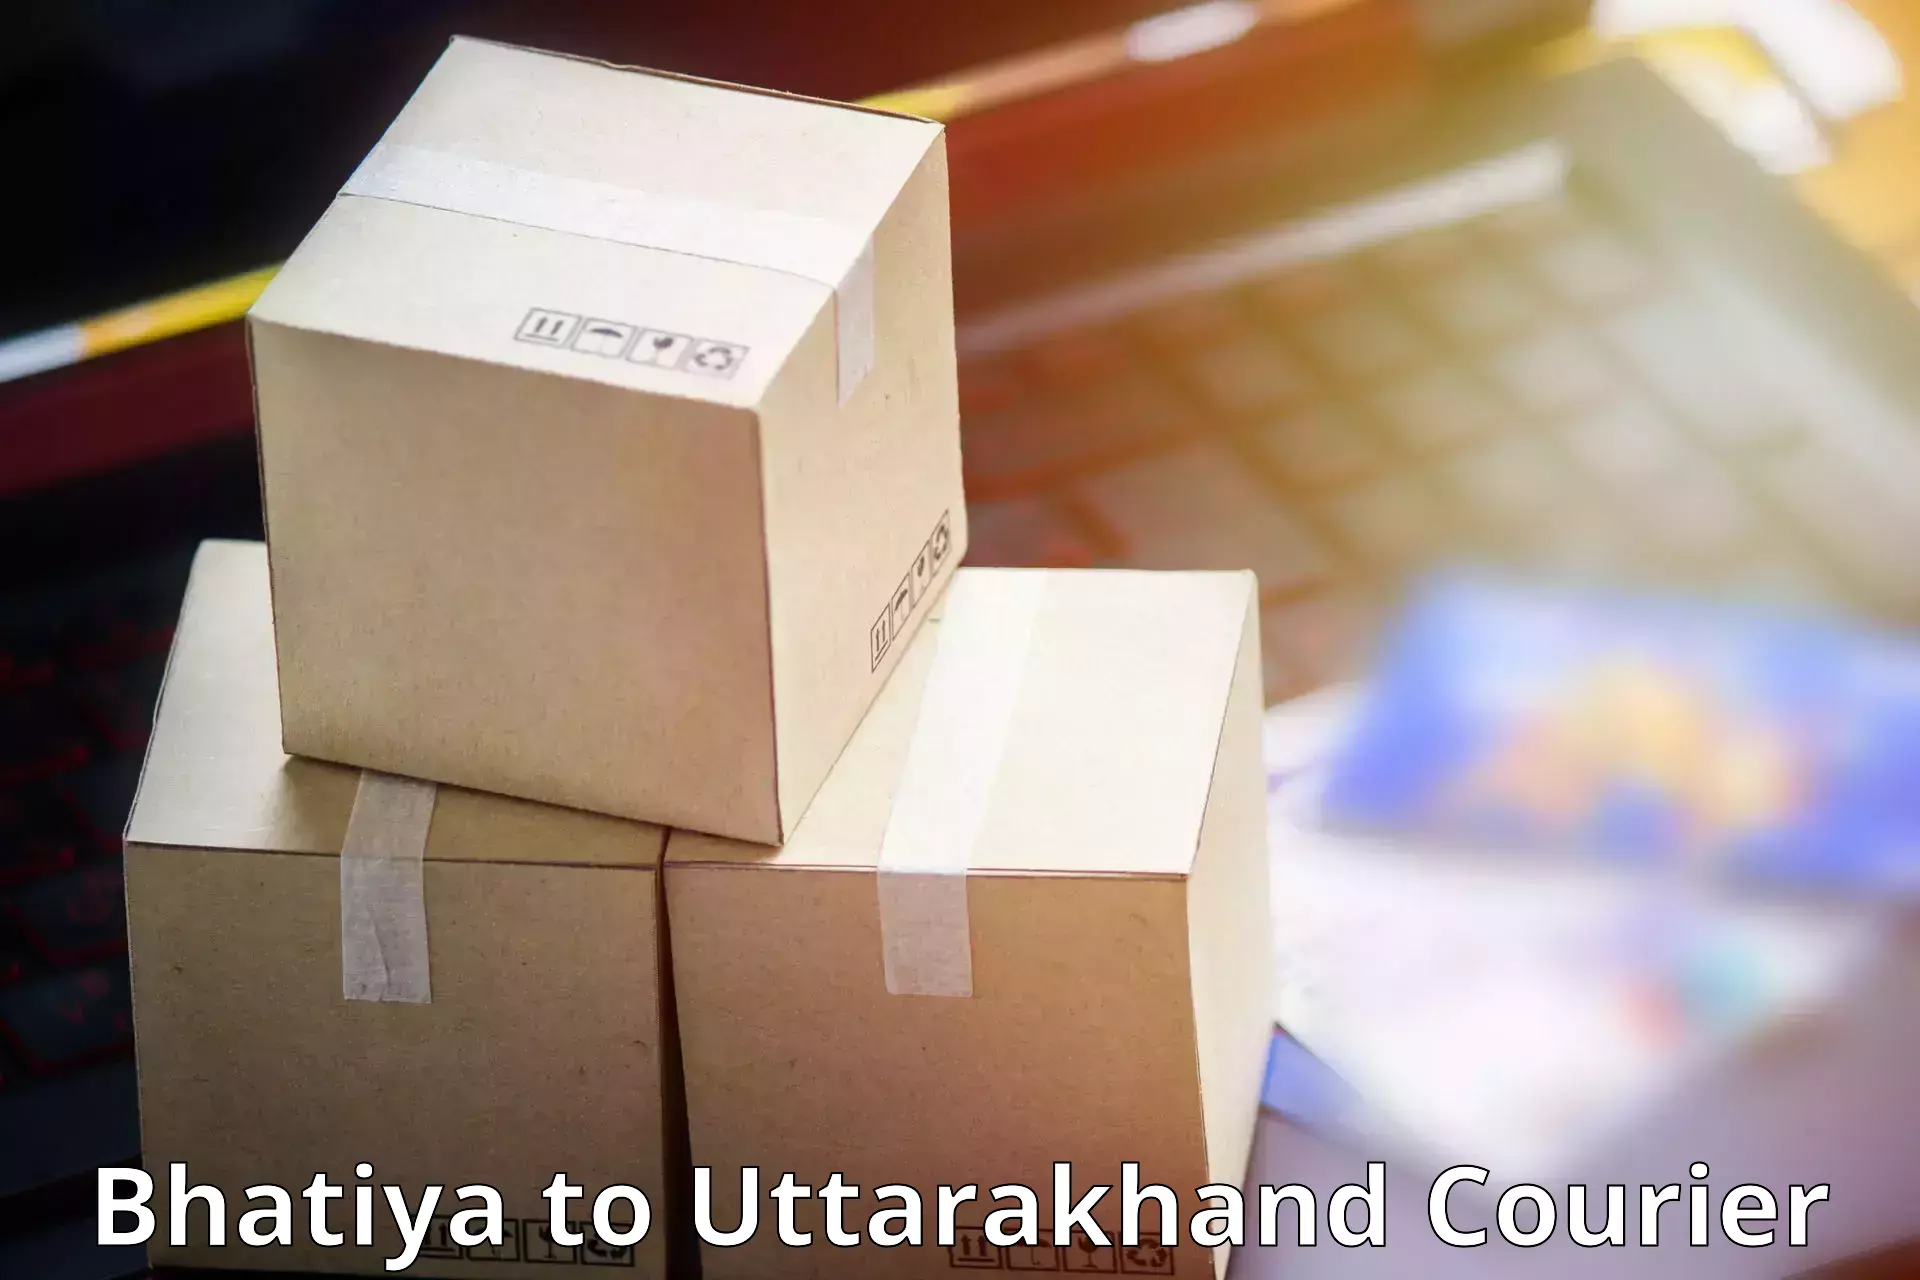 Advanced shipping services Bhatiya to Haridwar